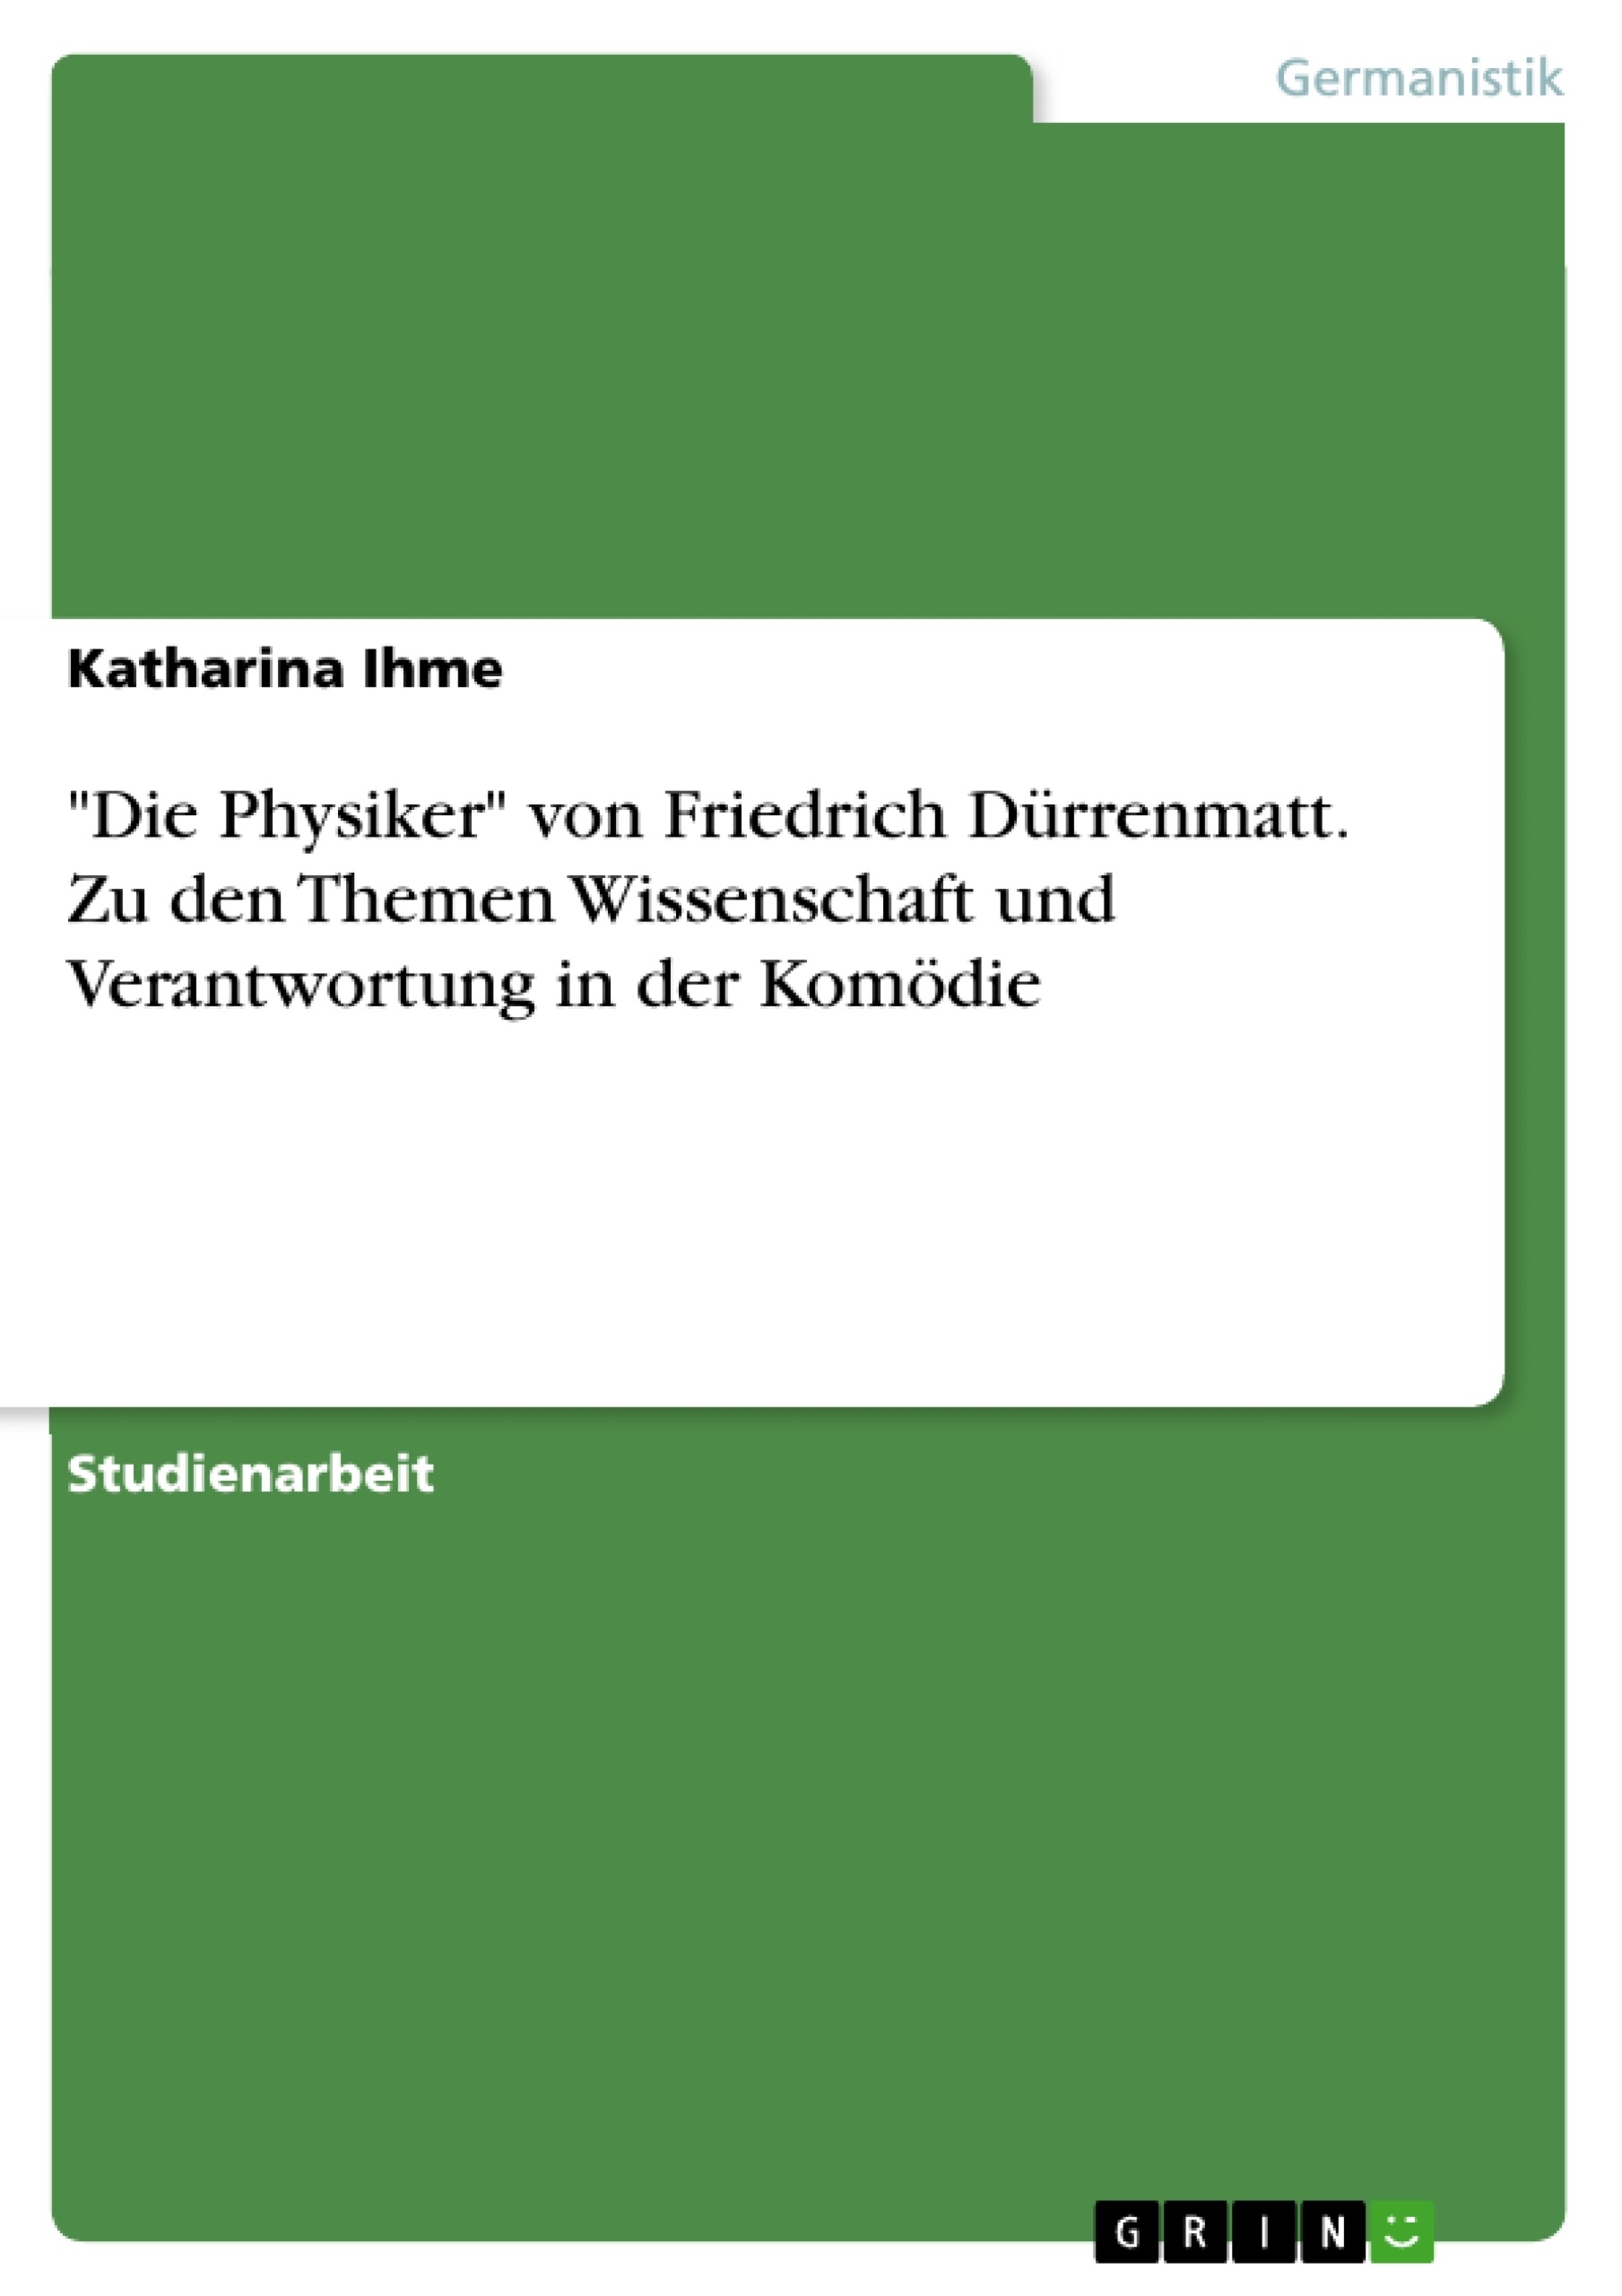 Title: "Die Physiker" von Friedrich Dürrenmatt. Zu den Themen Wissenschaft und Verantwortung in der Komödie